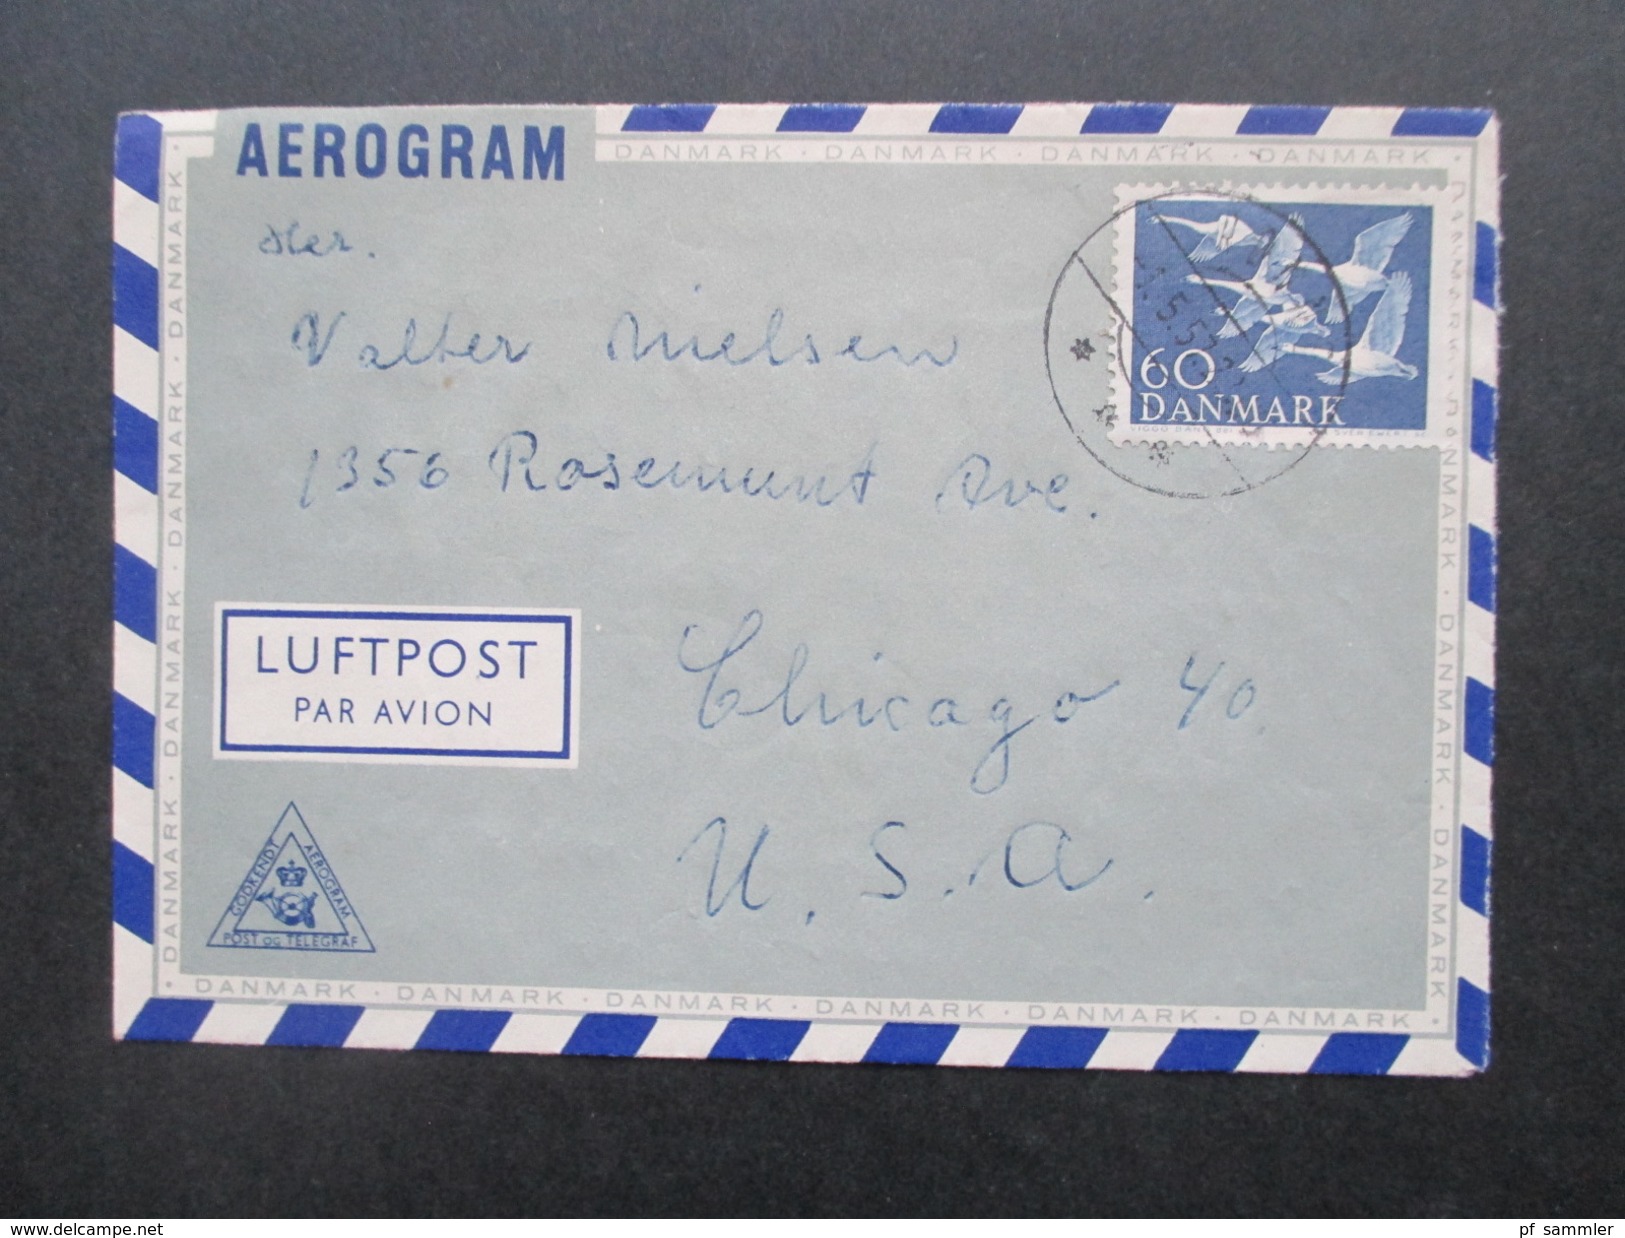 Dänemark 1950/60er Luftpostbelege alle in die USA gelaufen! 89 stk. Viele Jul Marken / Aerogramme! Interessanter Posten!